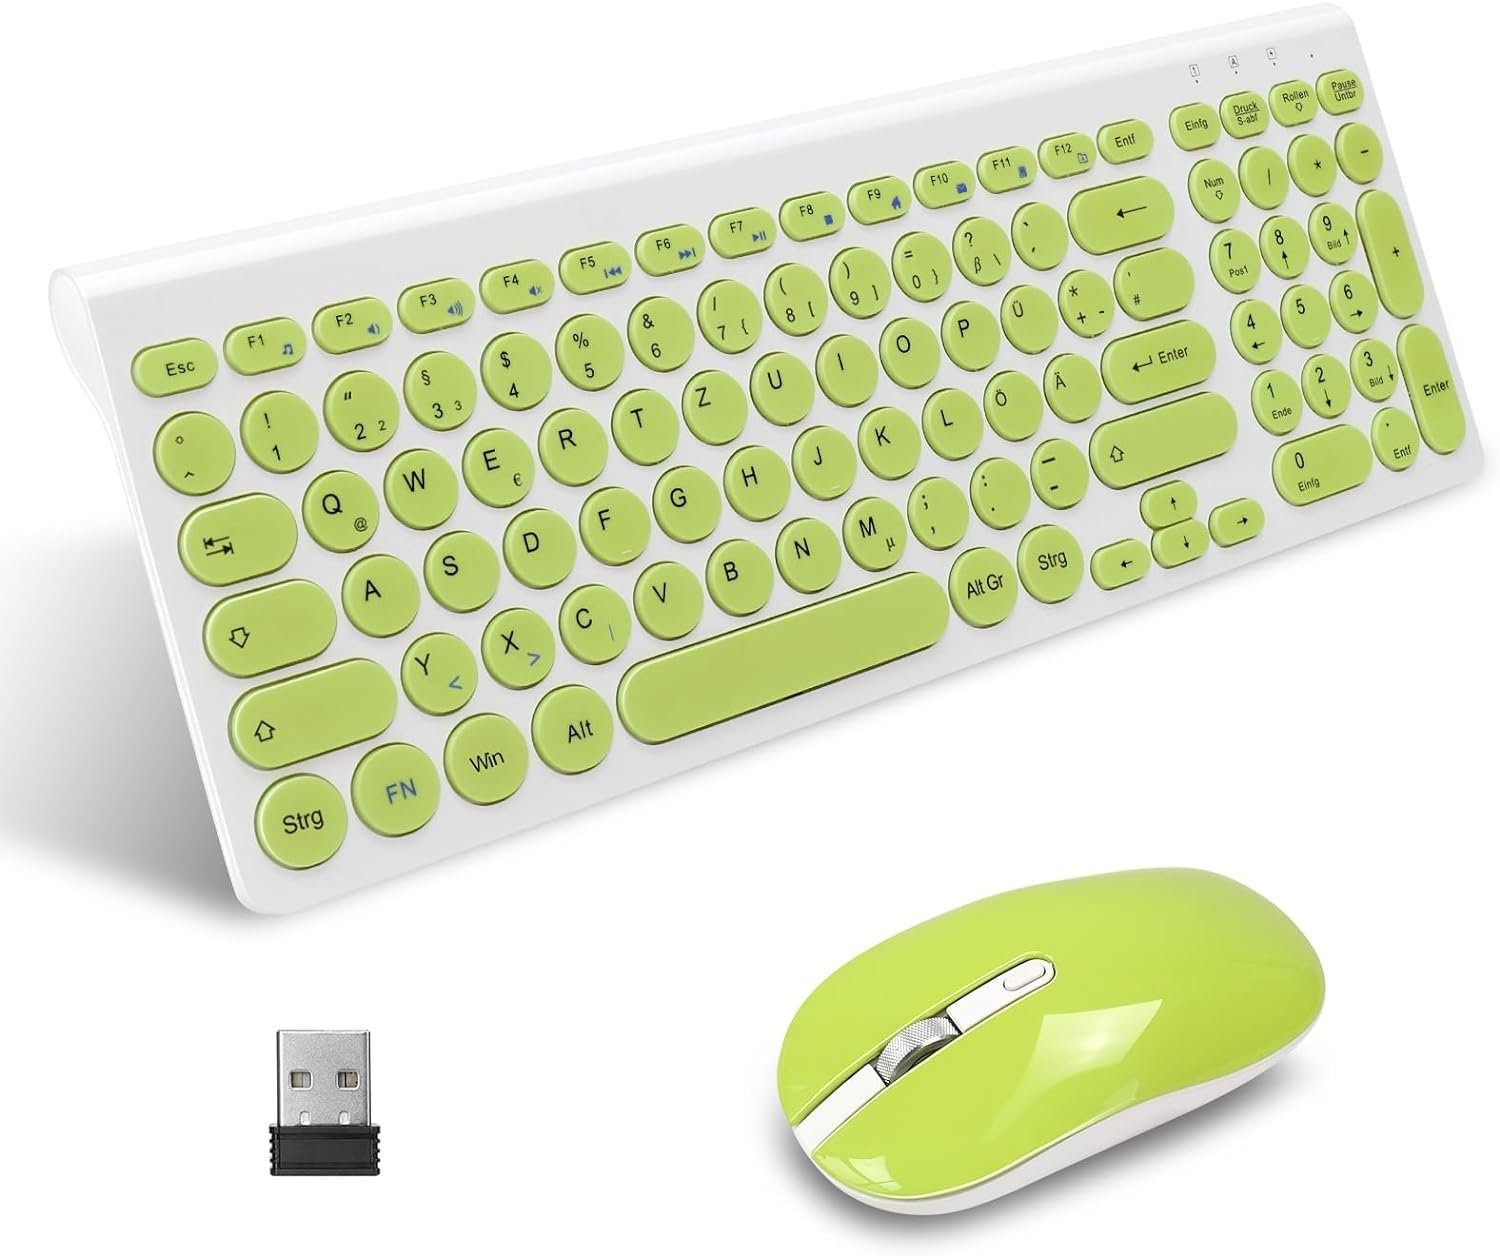 LeadsaiL Leise Tasten Tastatur- und Maus-Set, Kabelloses,Kompakte, langlebige Technologie für maximaleProduktivität